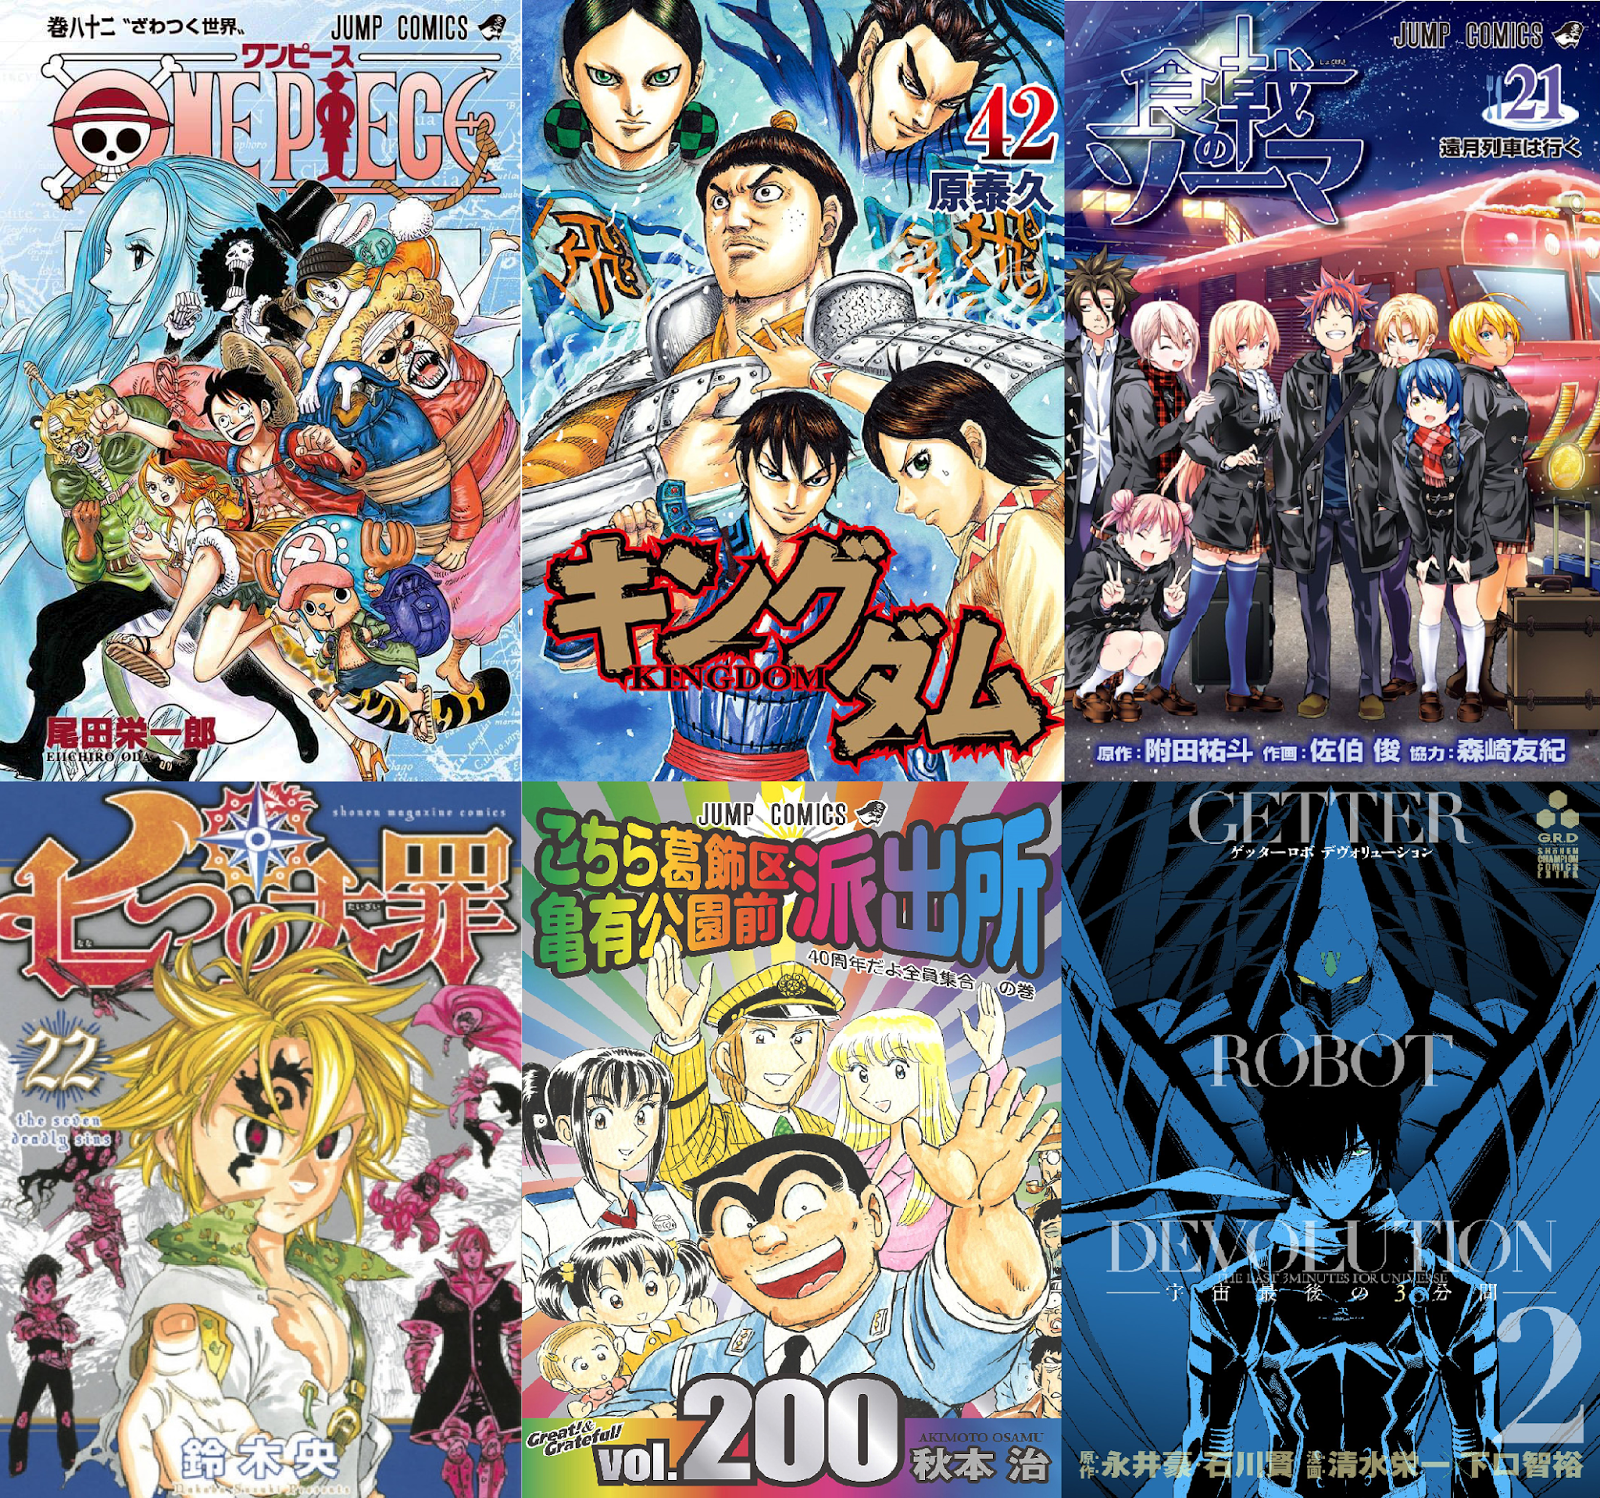 Recomendação: Hajime no Ippo, o melhor anime e manga de porrada,  literalmente!